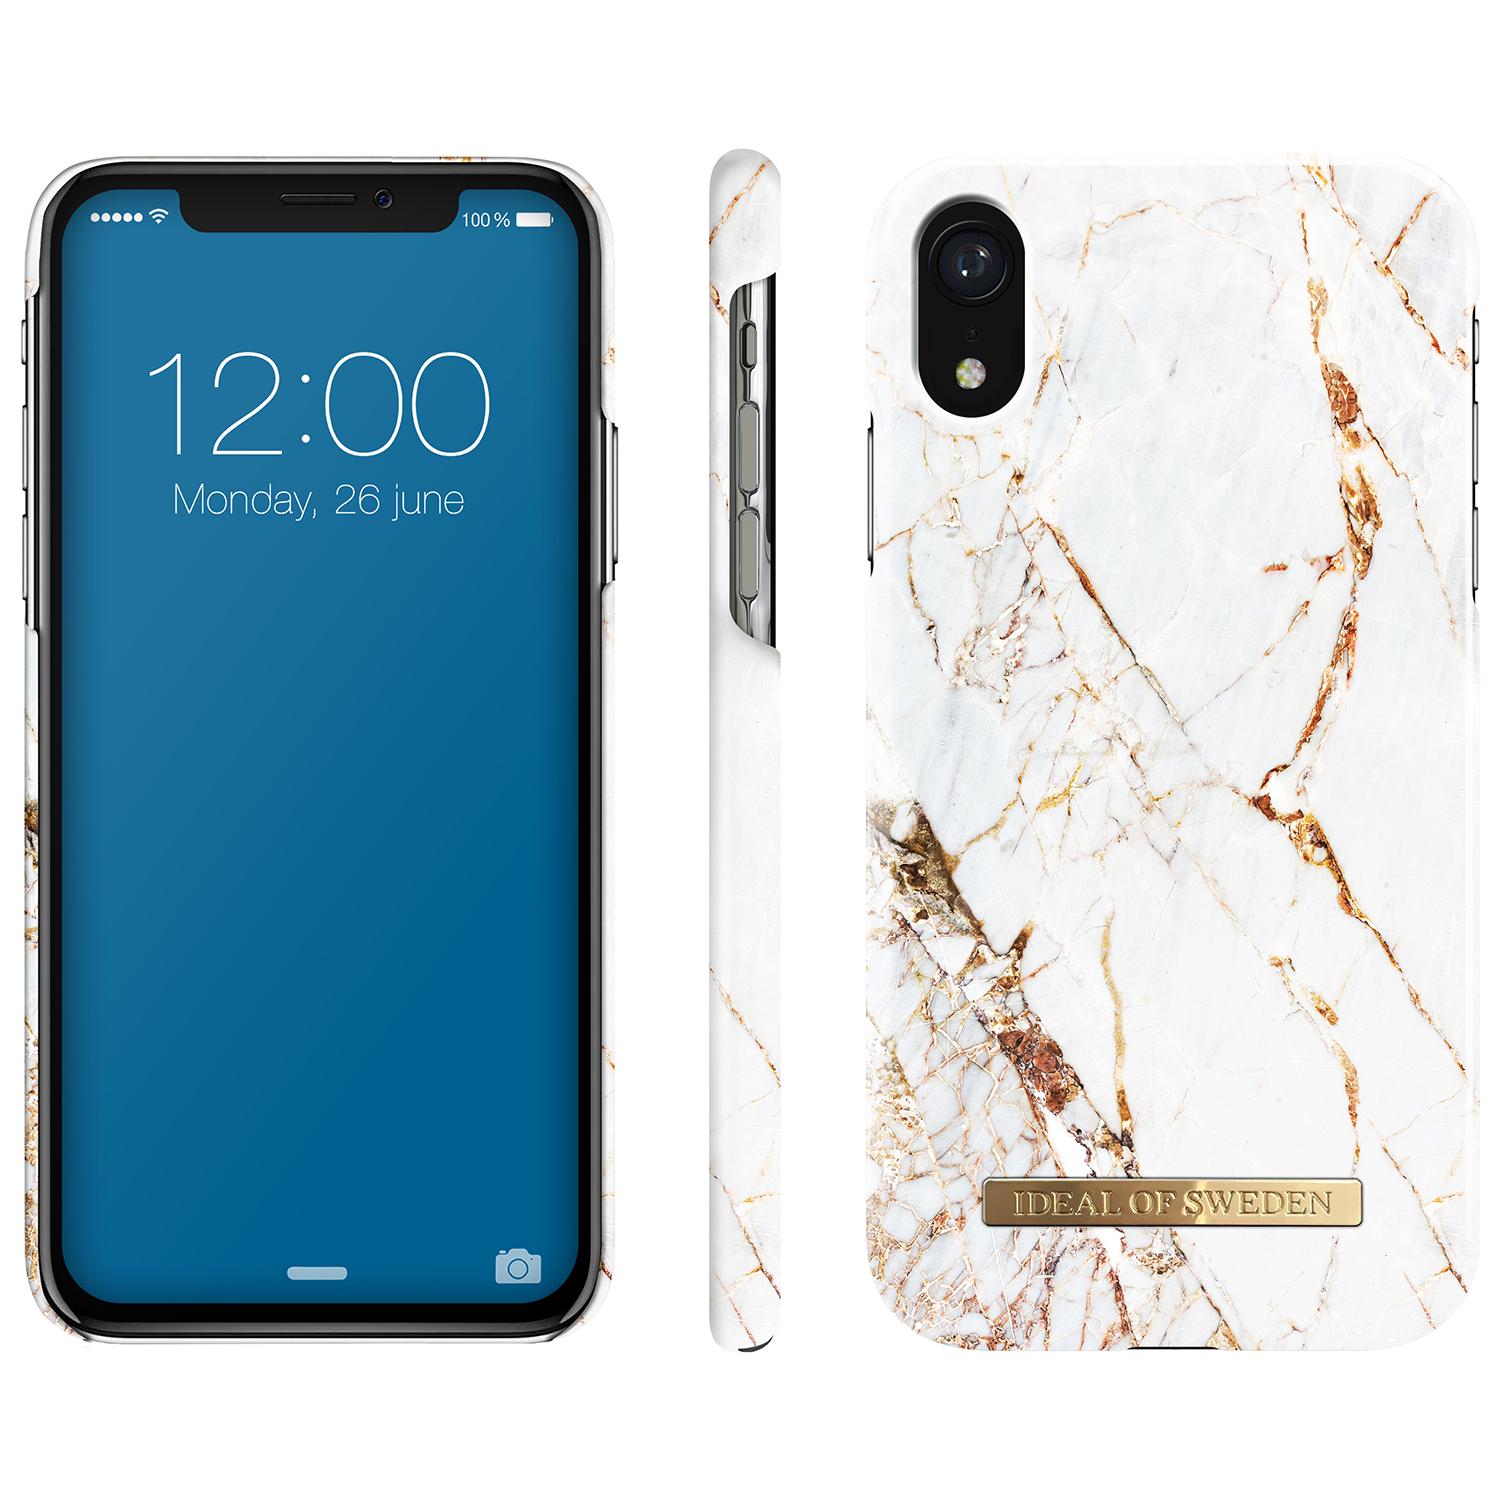 Fashion Case iPhone XR Carrara Gold Marble